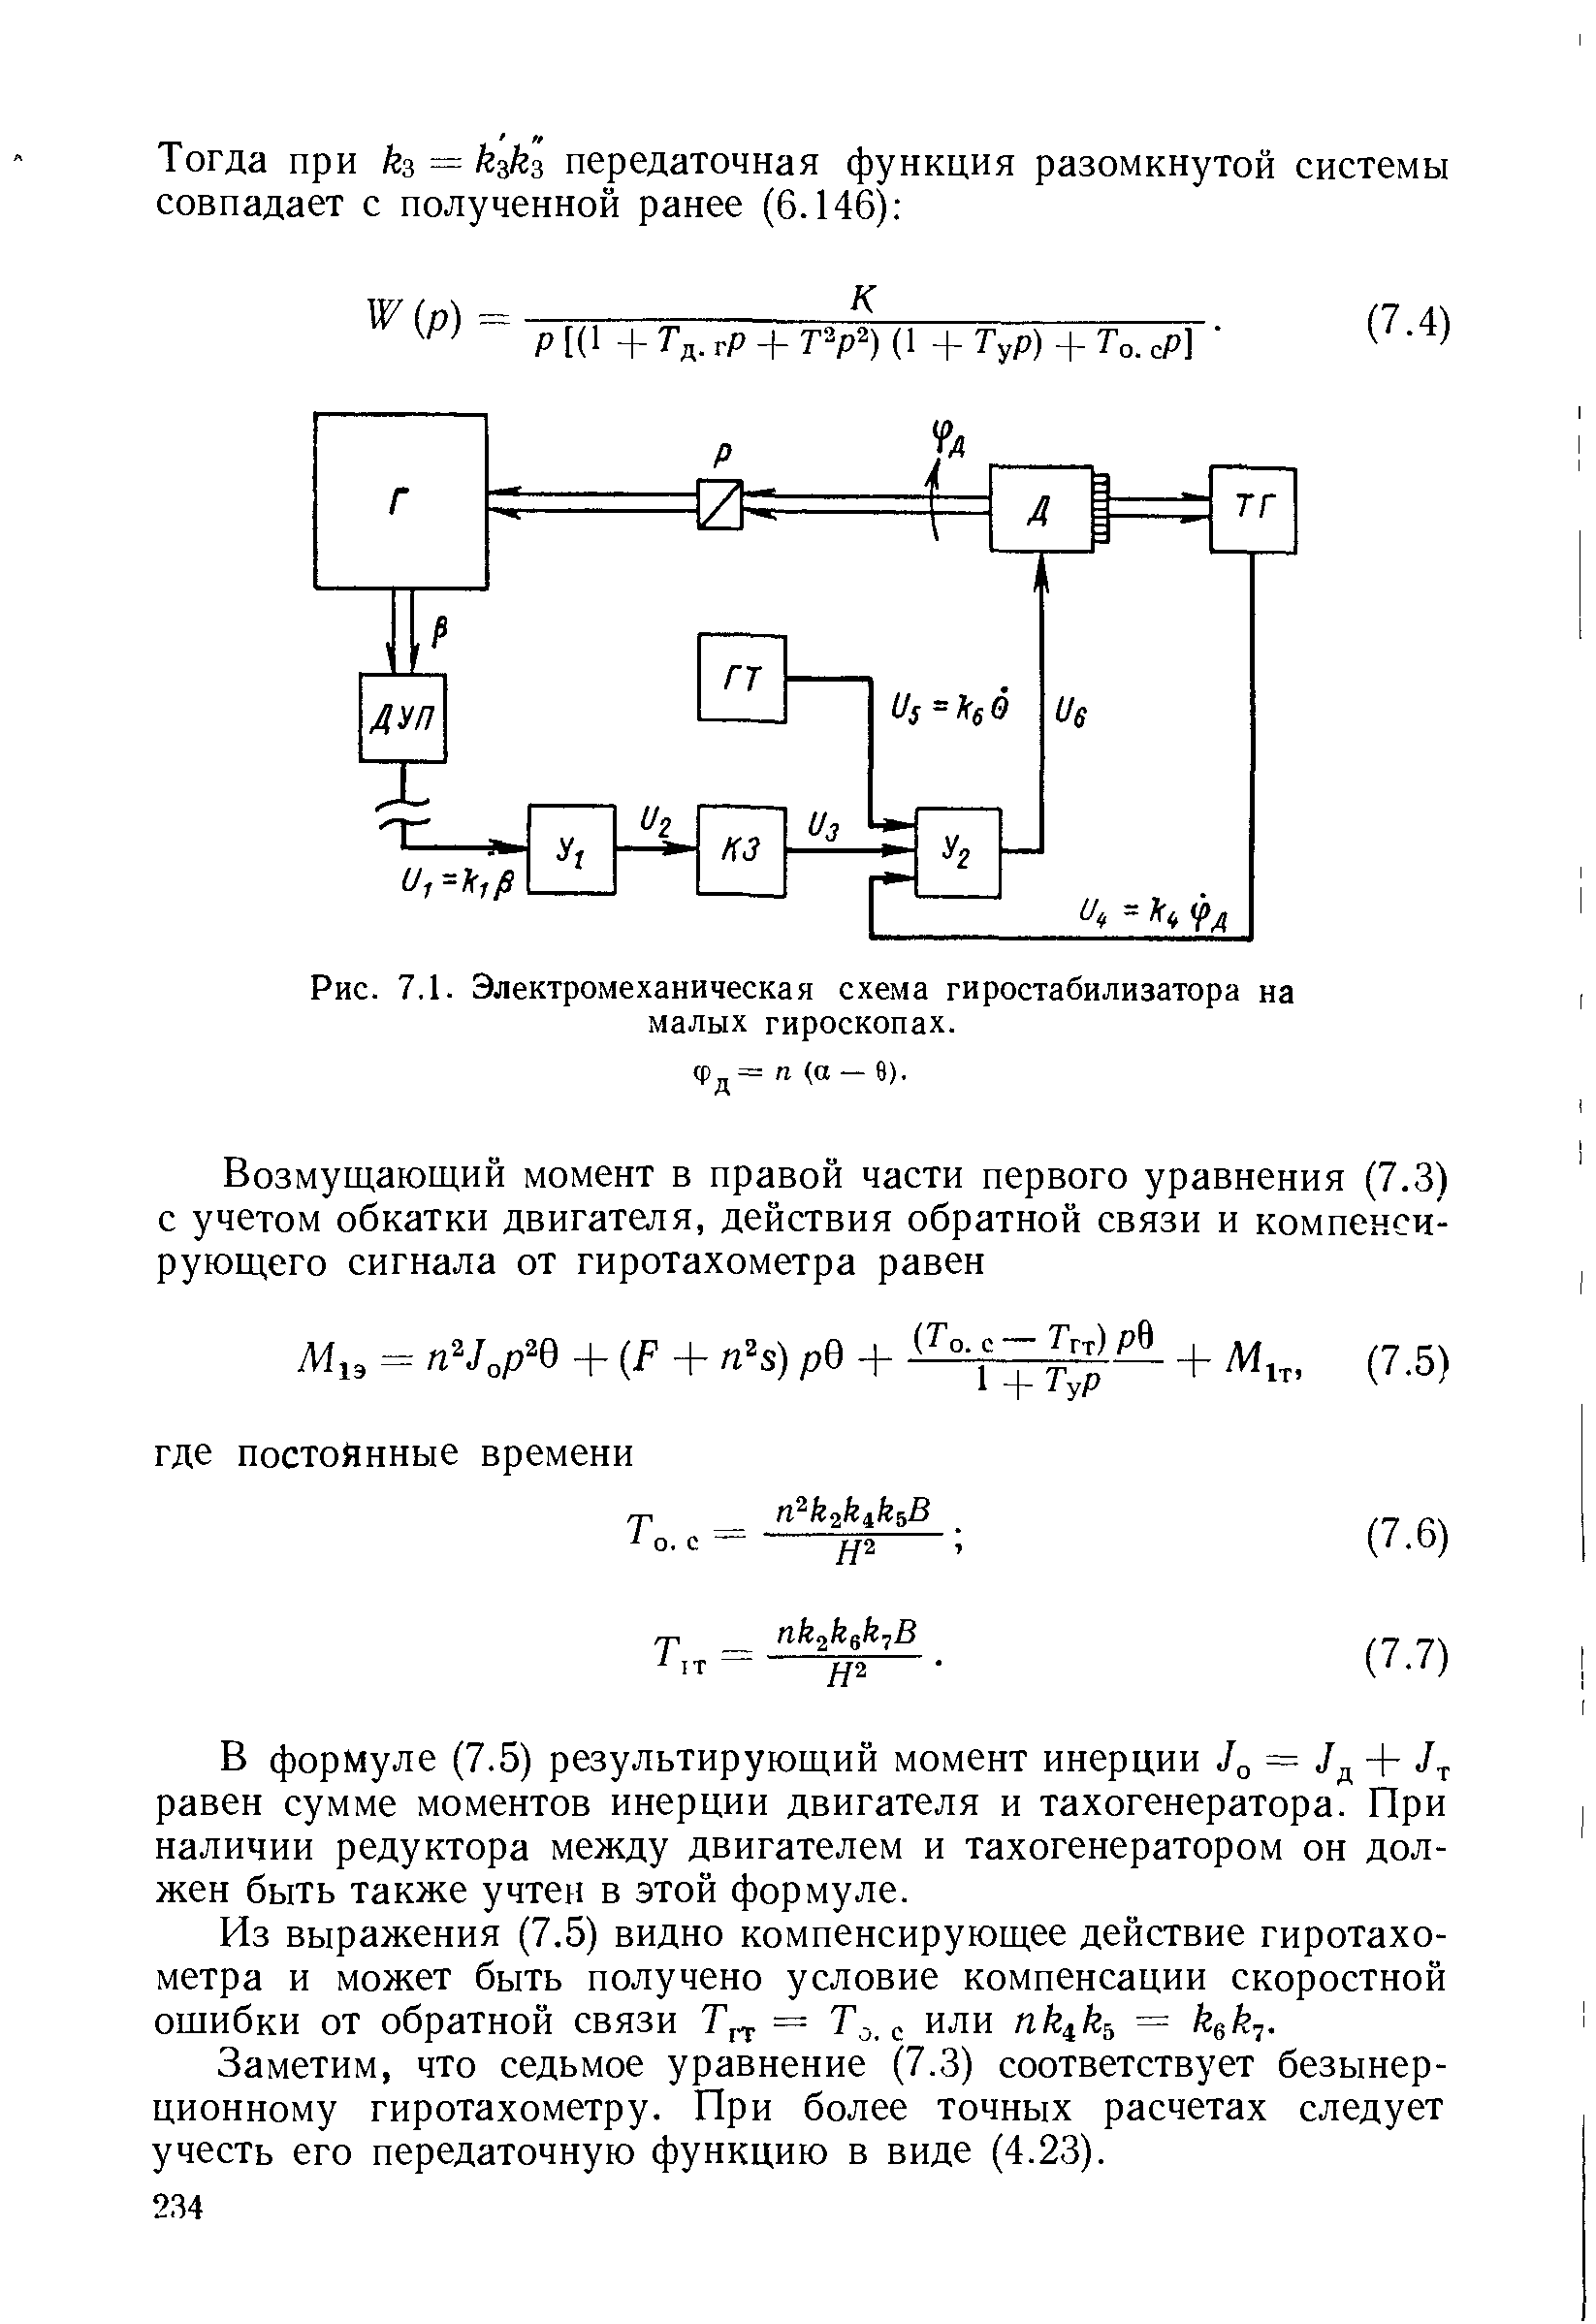 Рис. 7.1. Электромеханическая схема гиростабилизатора на малых гироскопах.
